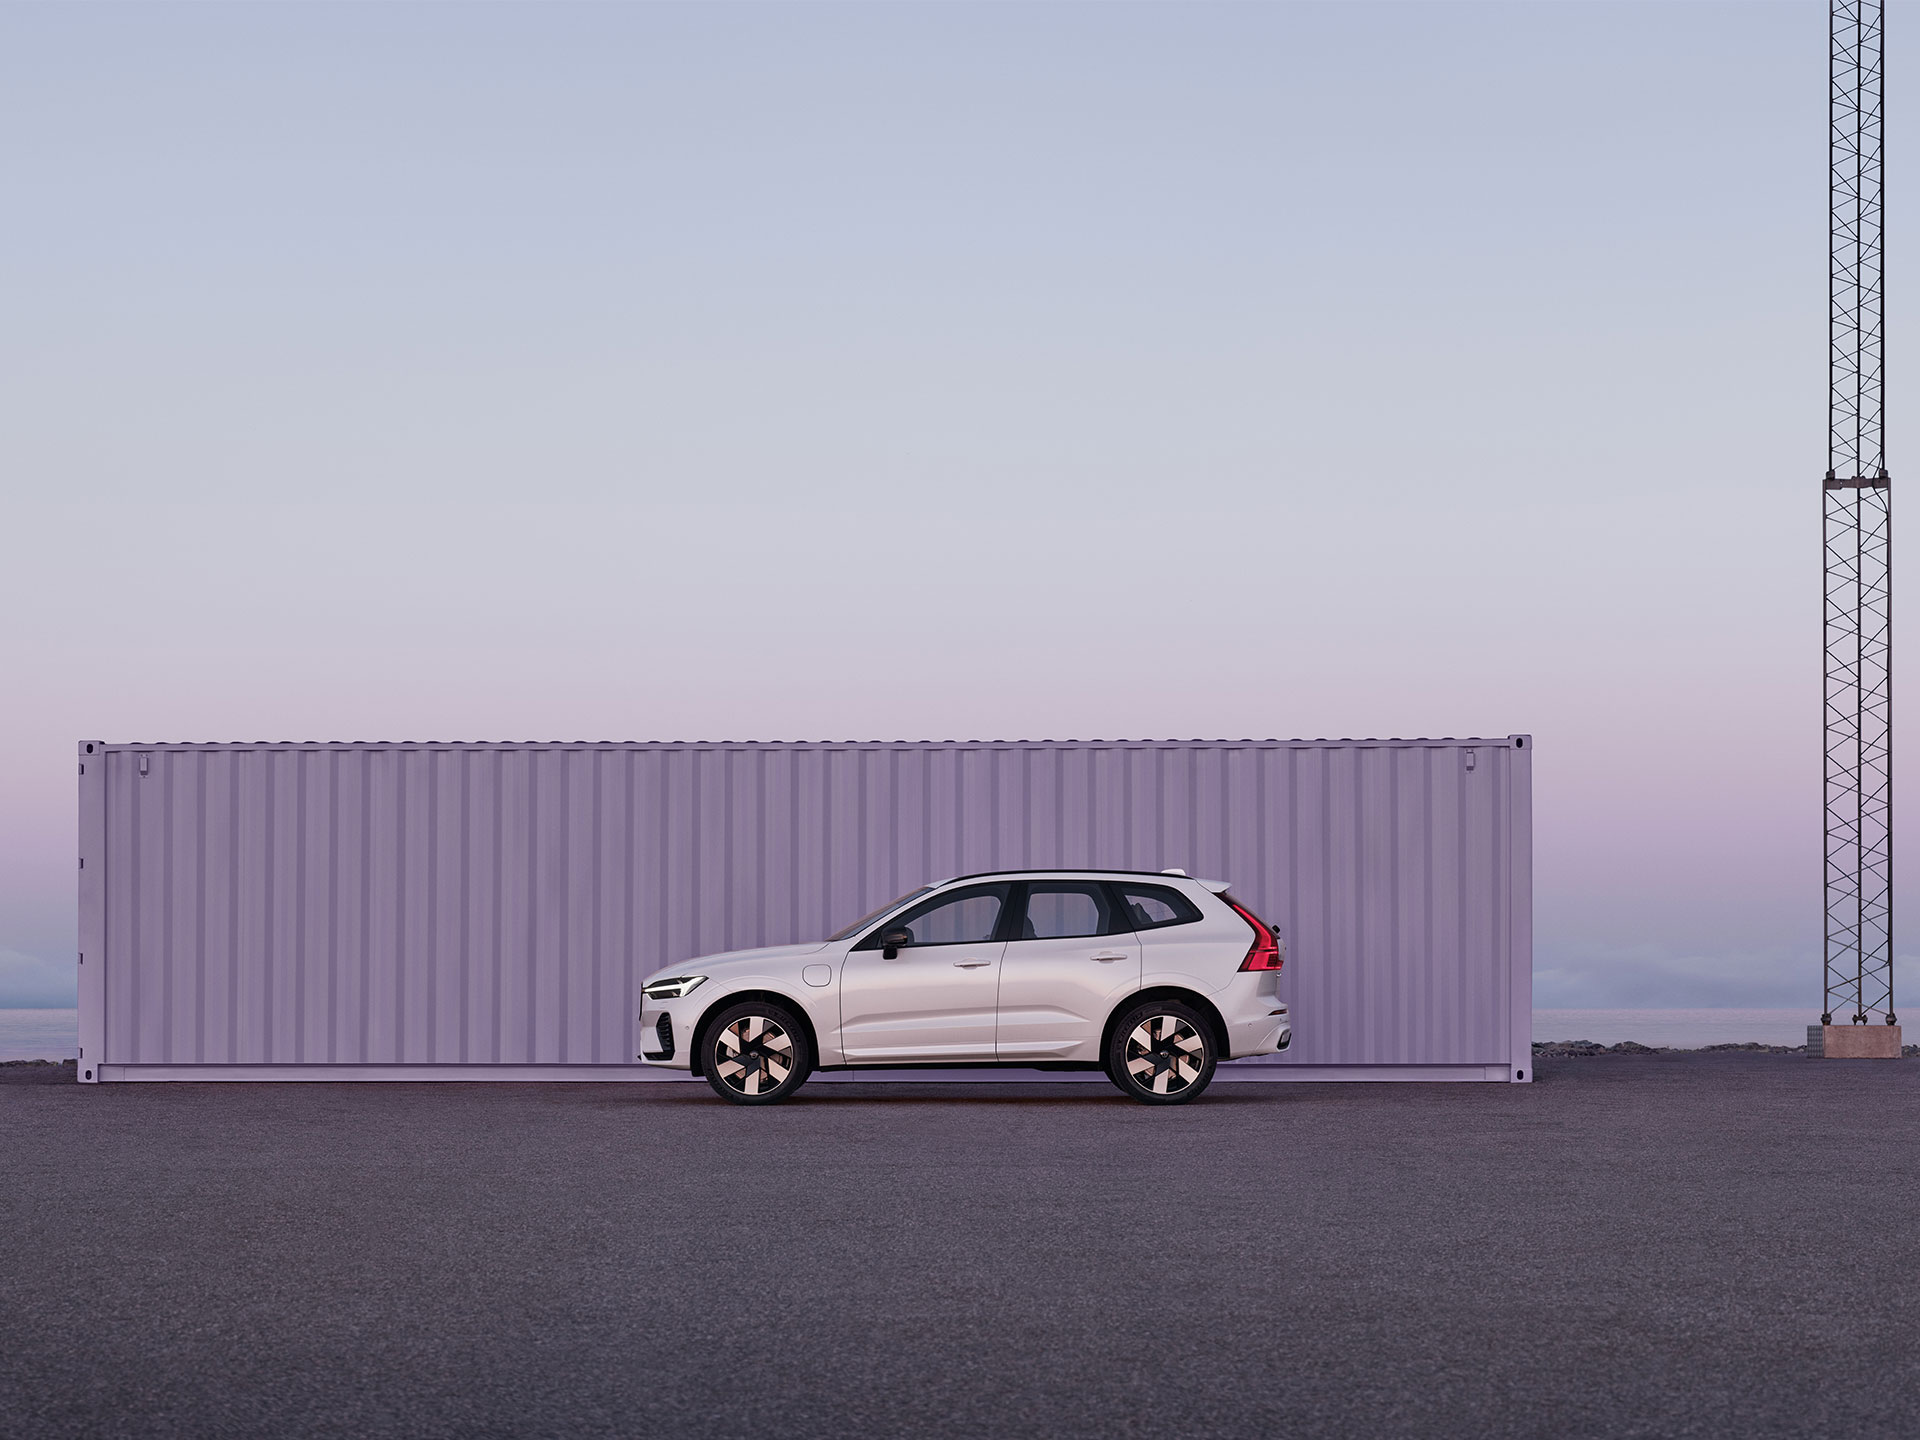 Een Volvo XC60 geparkeerd in een rustige, industriële omgeving in het paarse en roze licht van een kleurrijke zonsopgang.